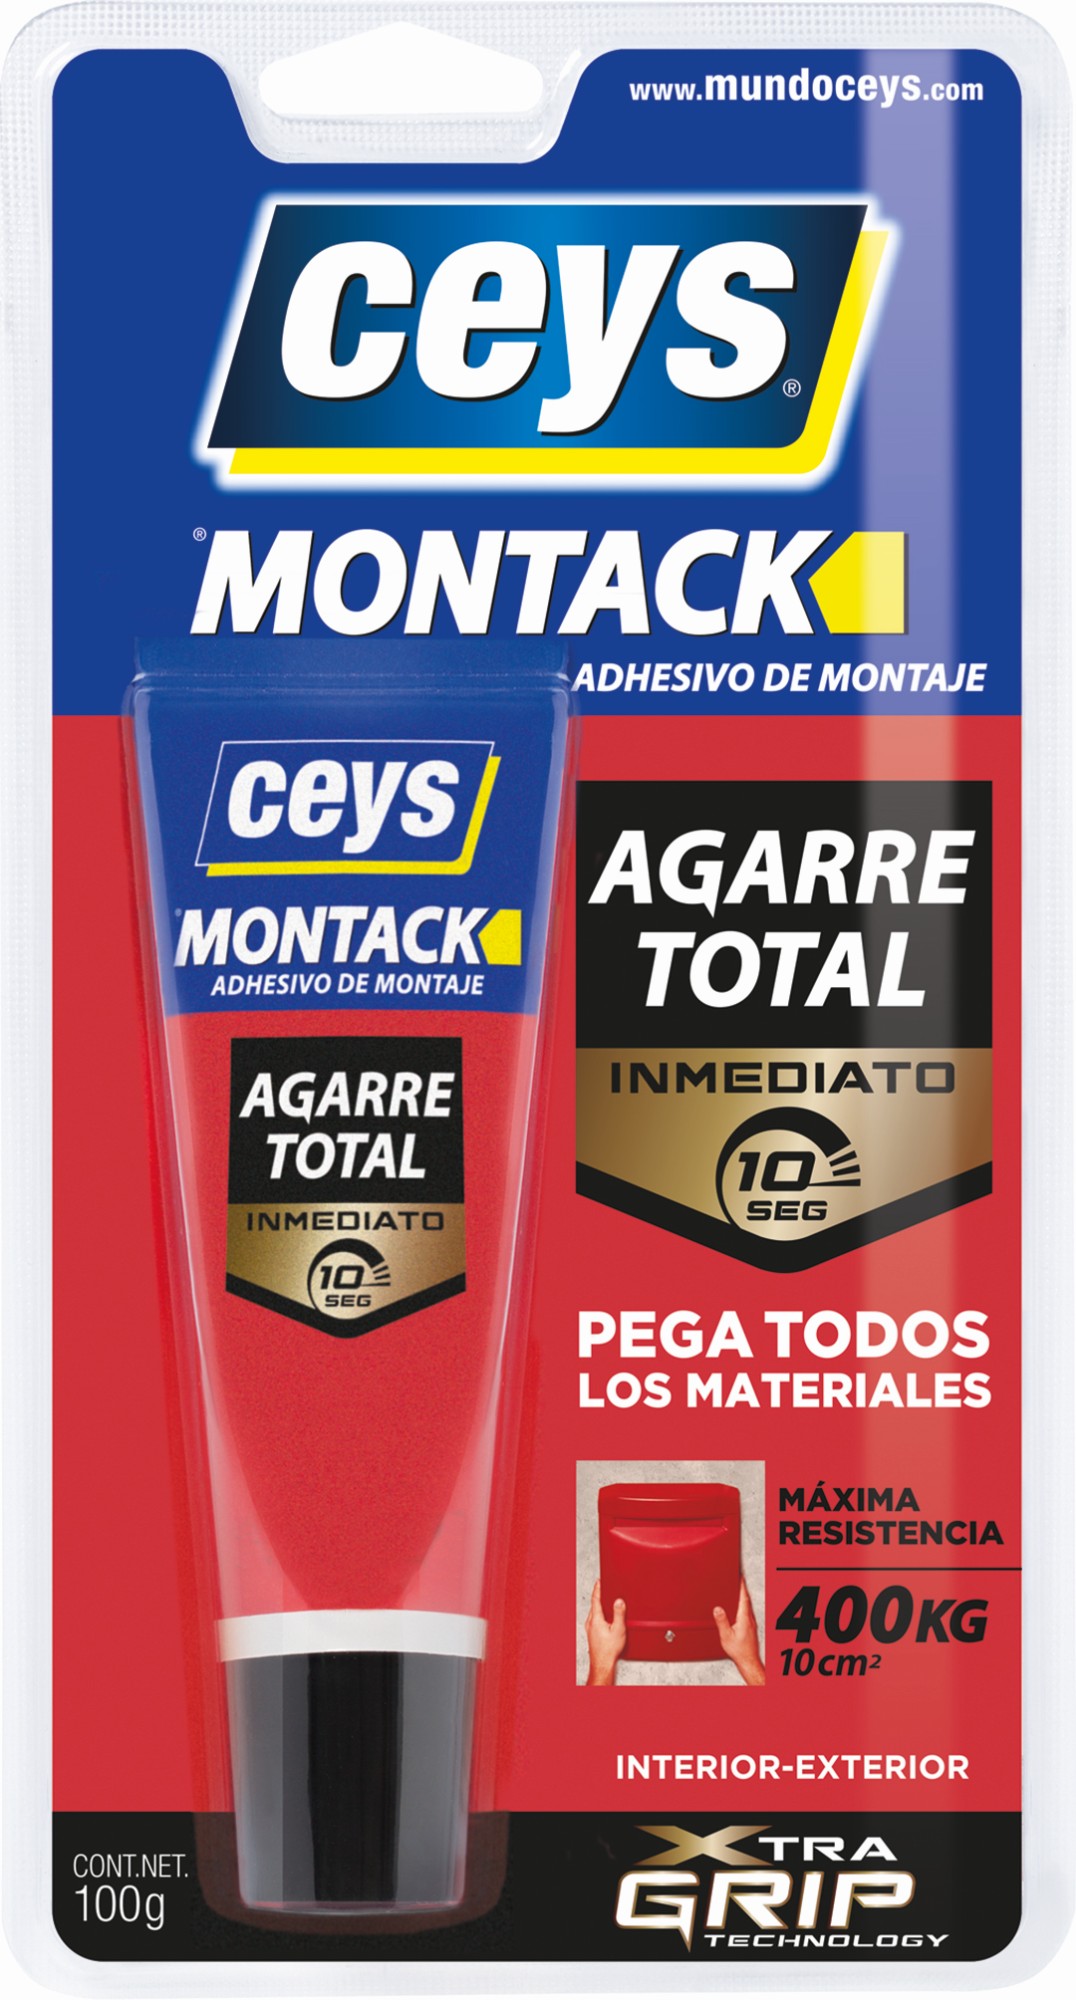 Marron & Montack, el adhesivo de AGARRE TOTAL número 1 